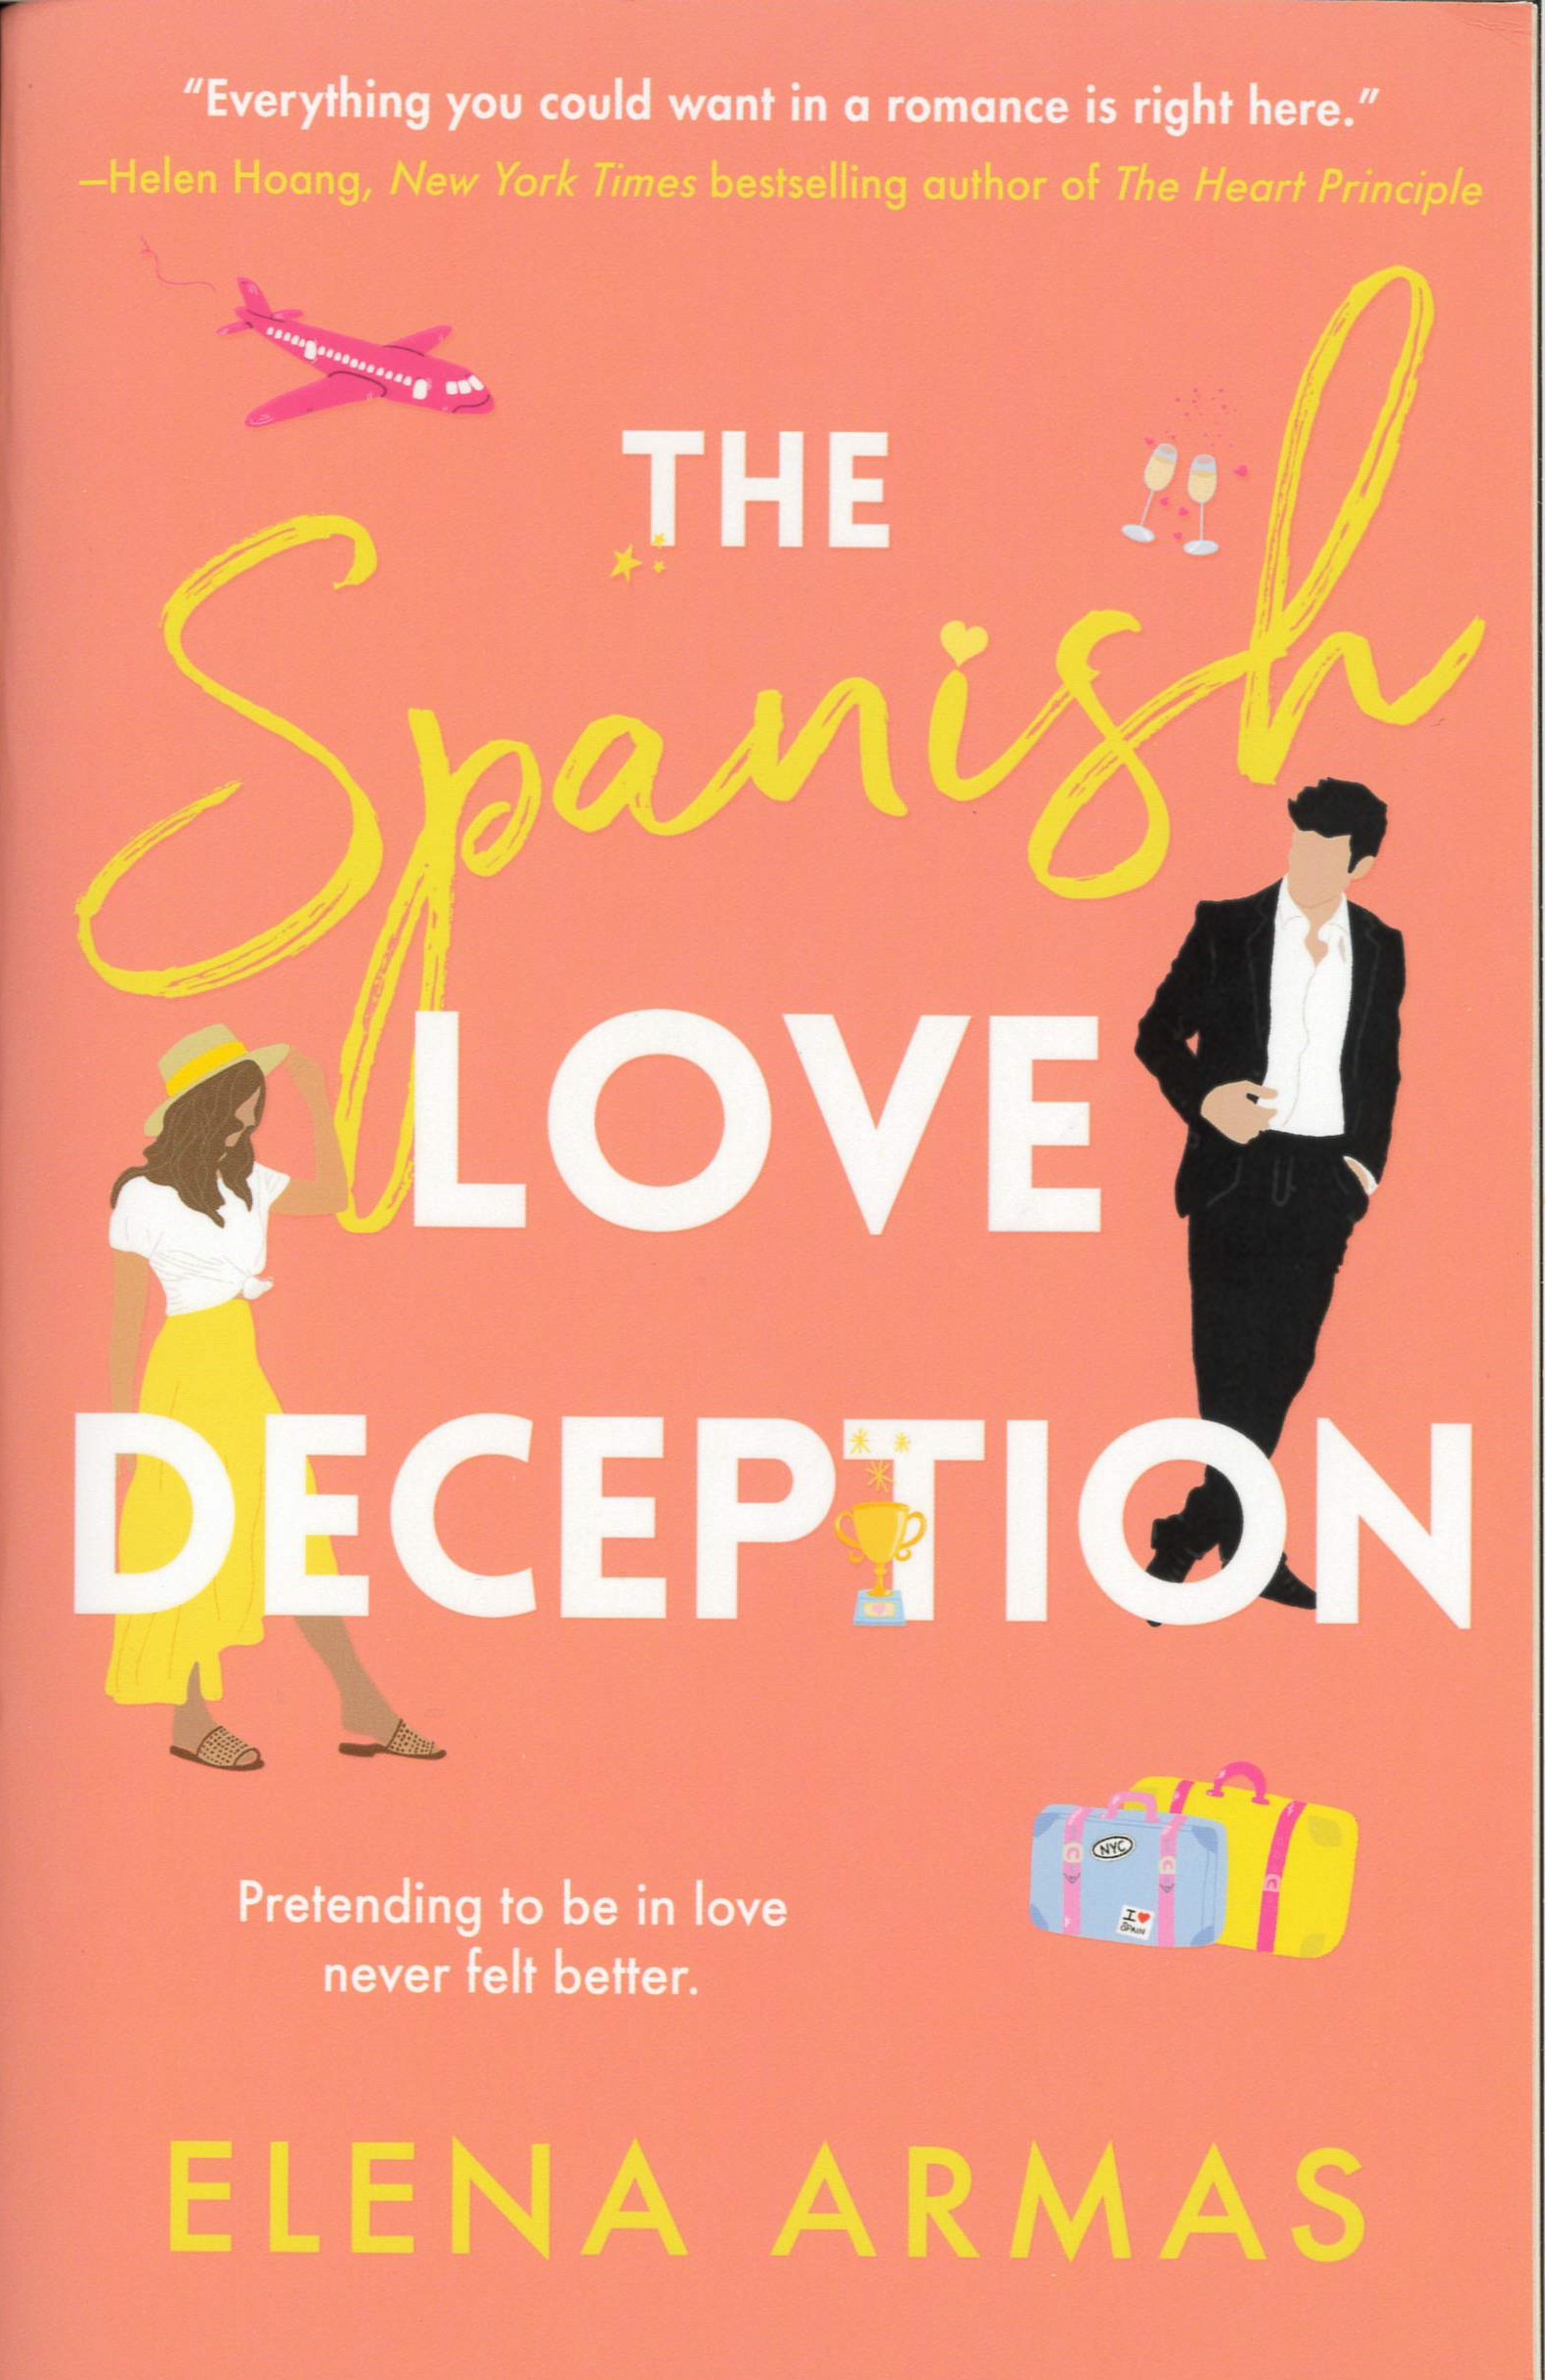 The Spanish love deception : a novel /